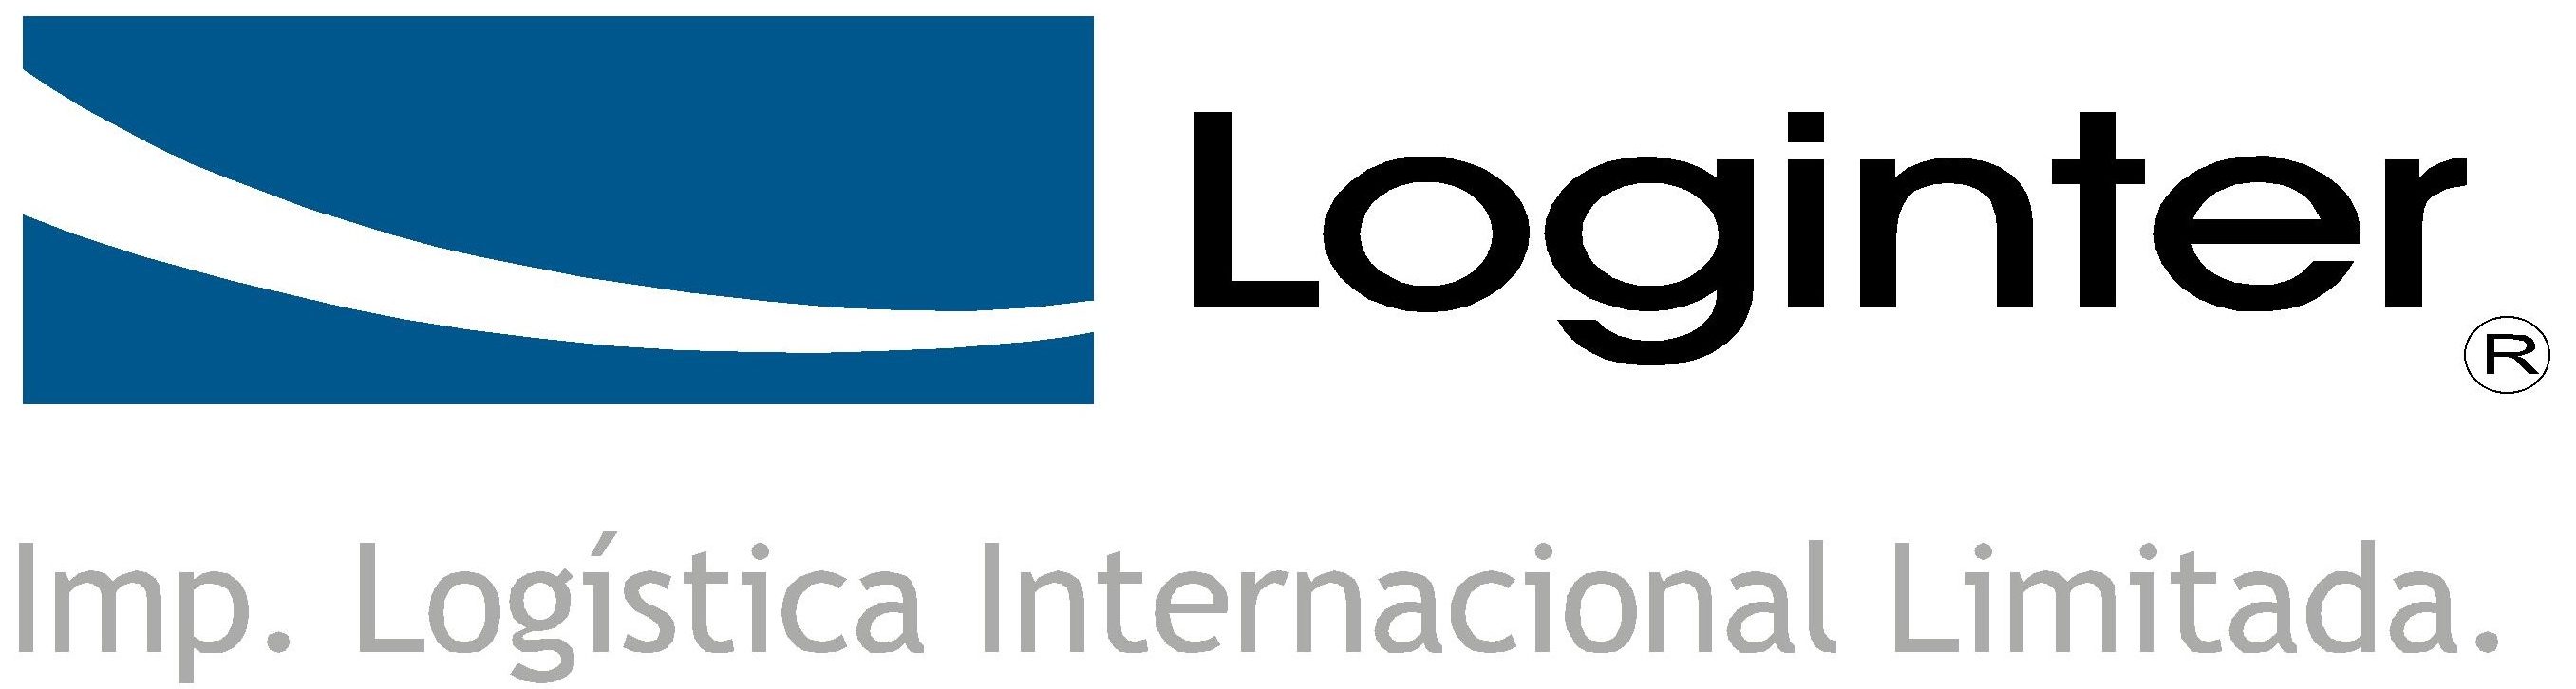 Importadora Logistica Internacional Ltda. Loginter.